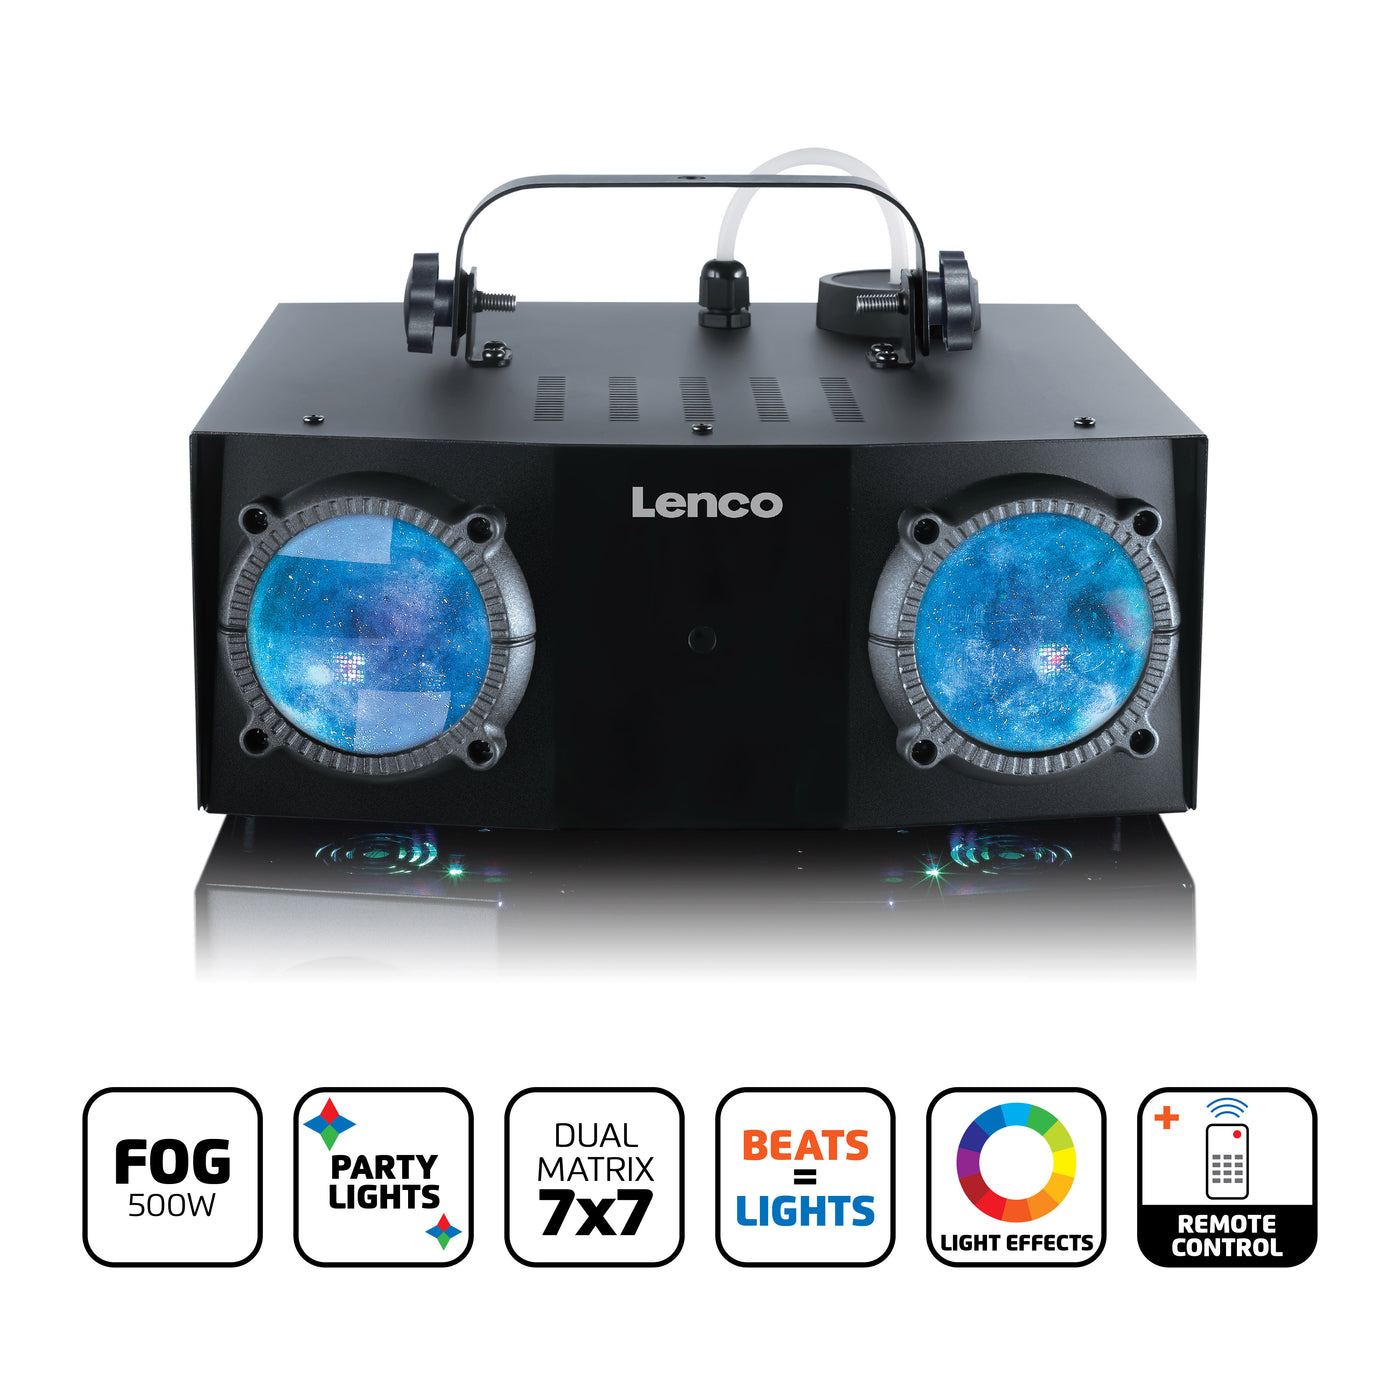 LENCO LFM-110BK - Wytwornica światła i mgły imprezowej LED z podwójną matrycą